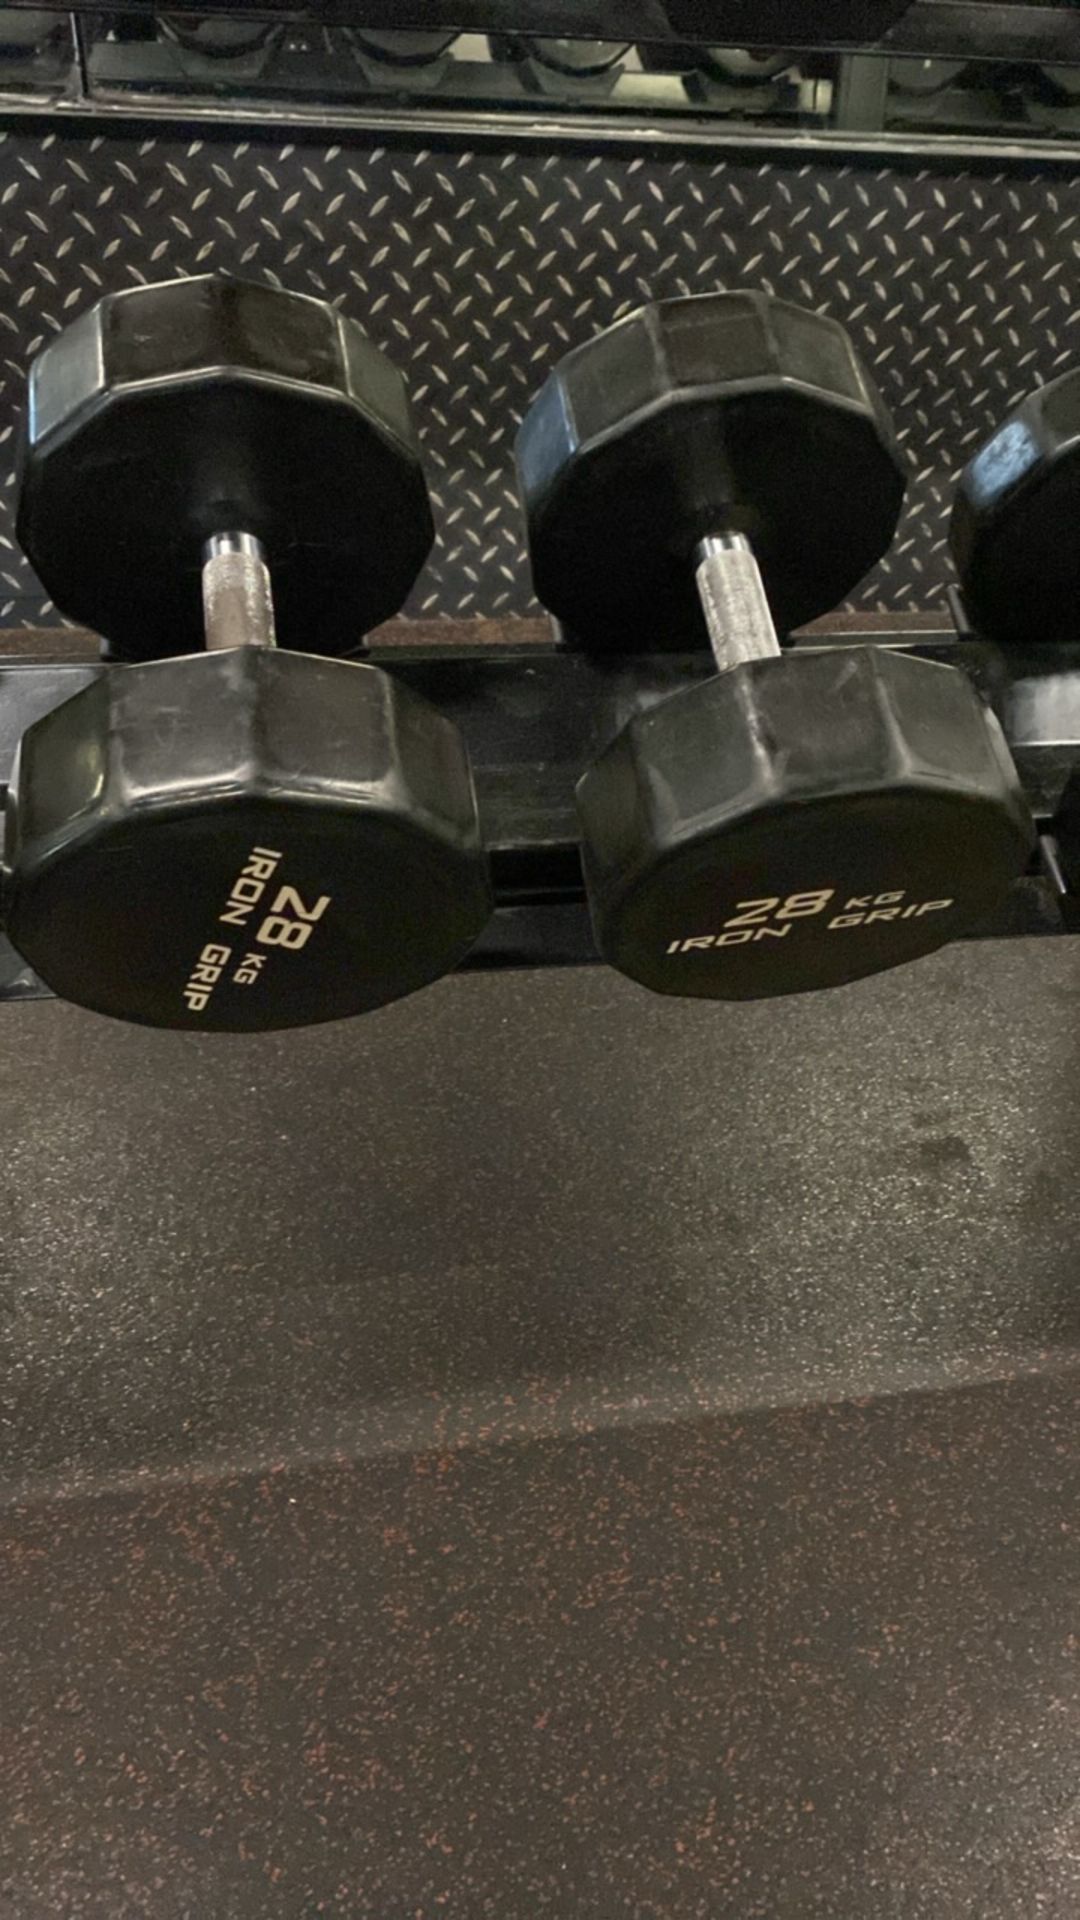 Iron Grip Dumbell Set 28kg, 30kg - Image 4 of 5